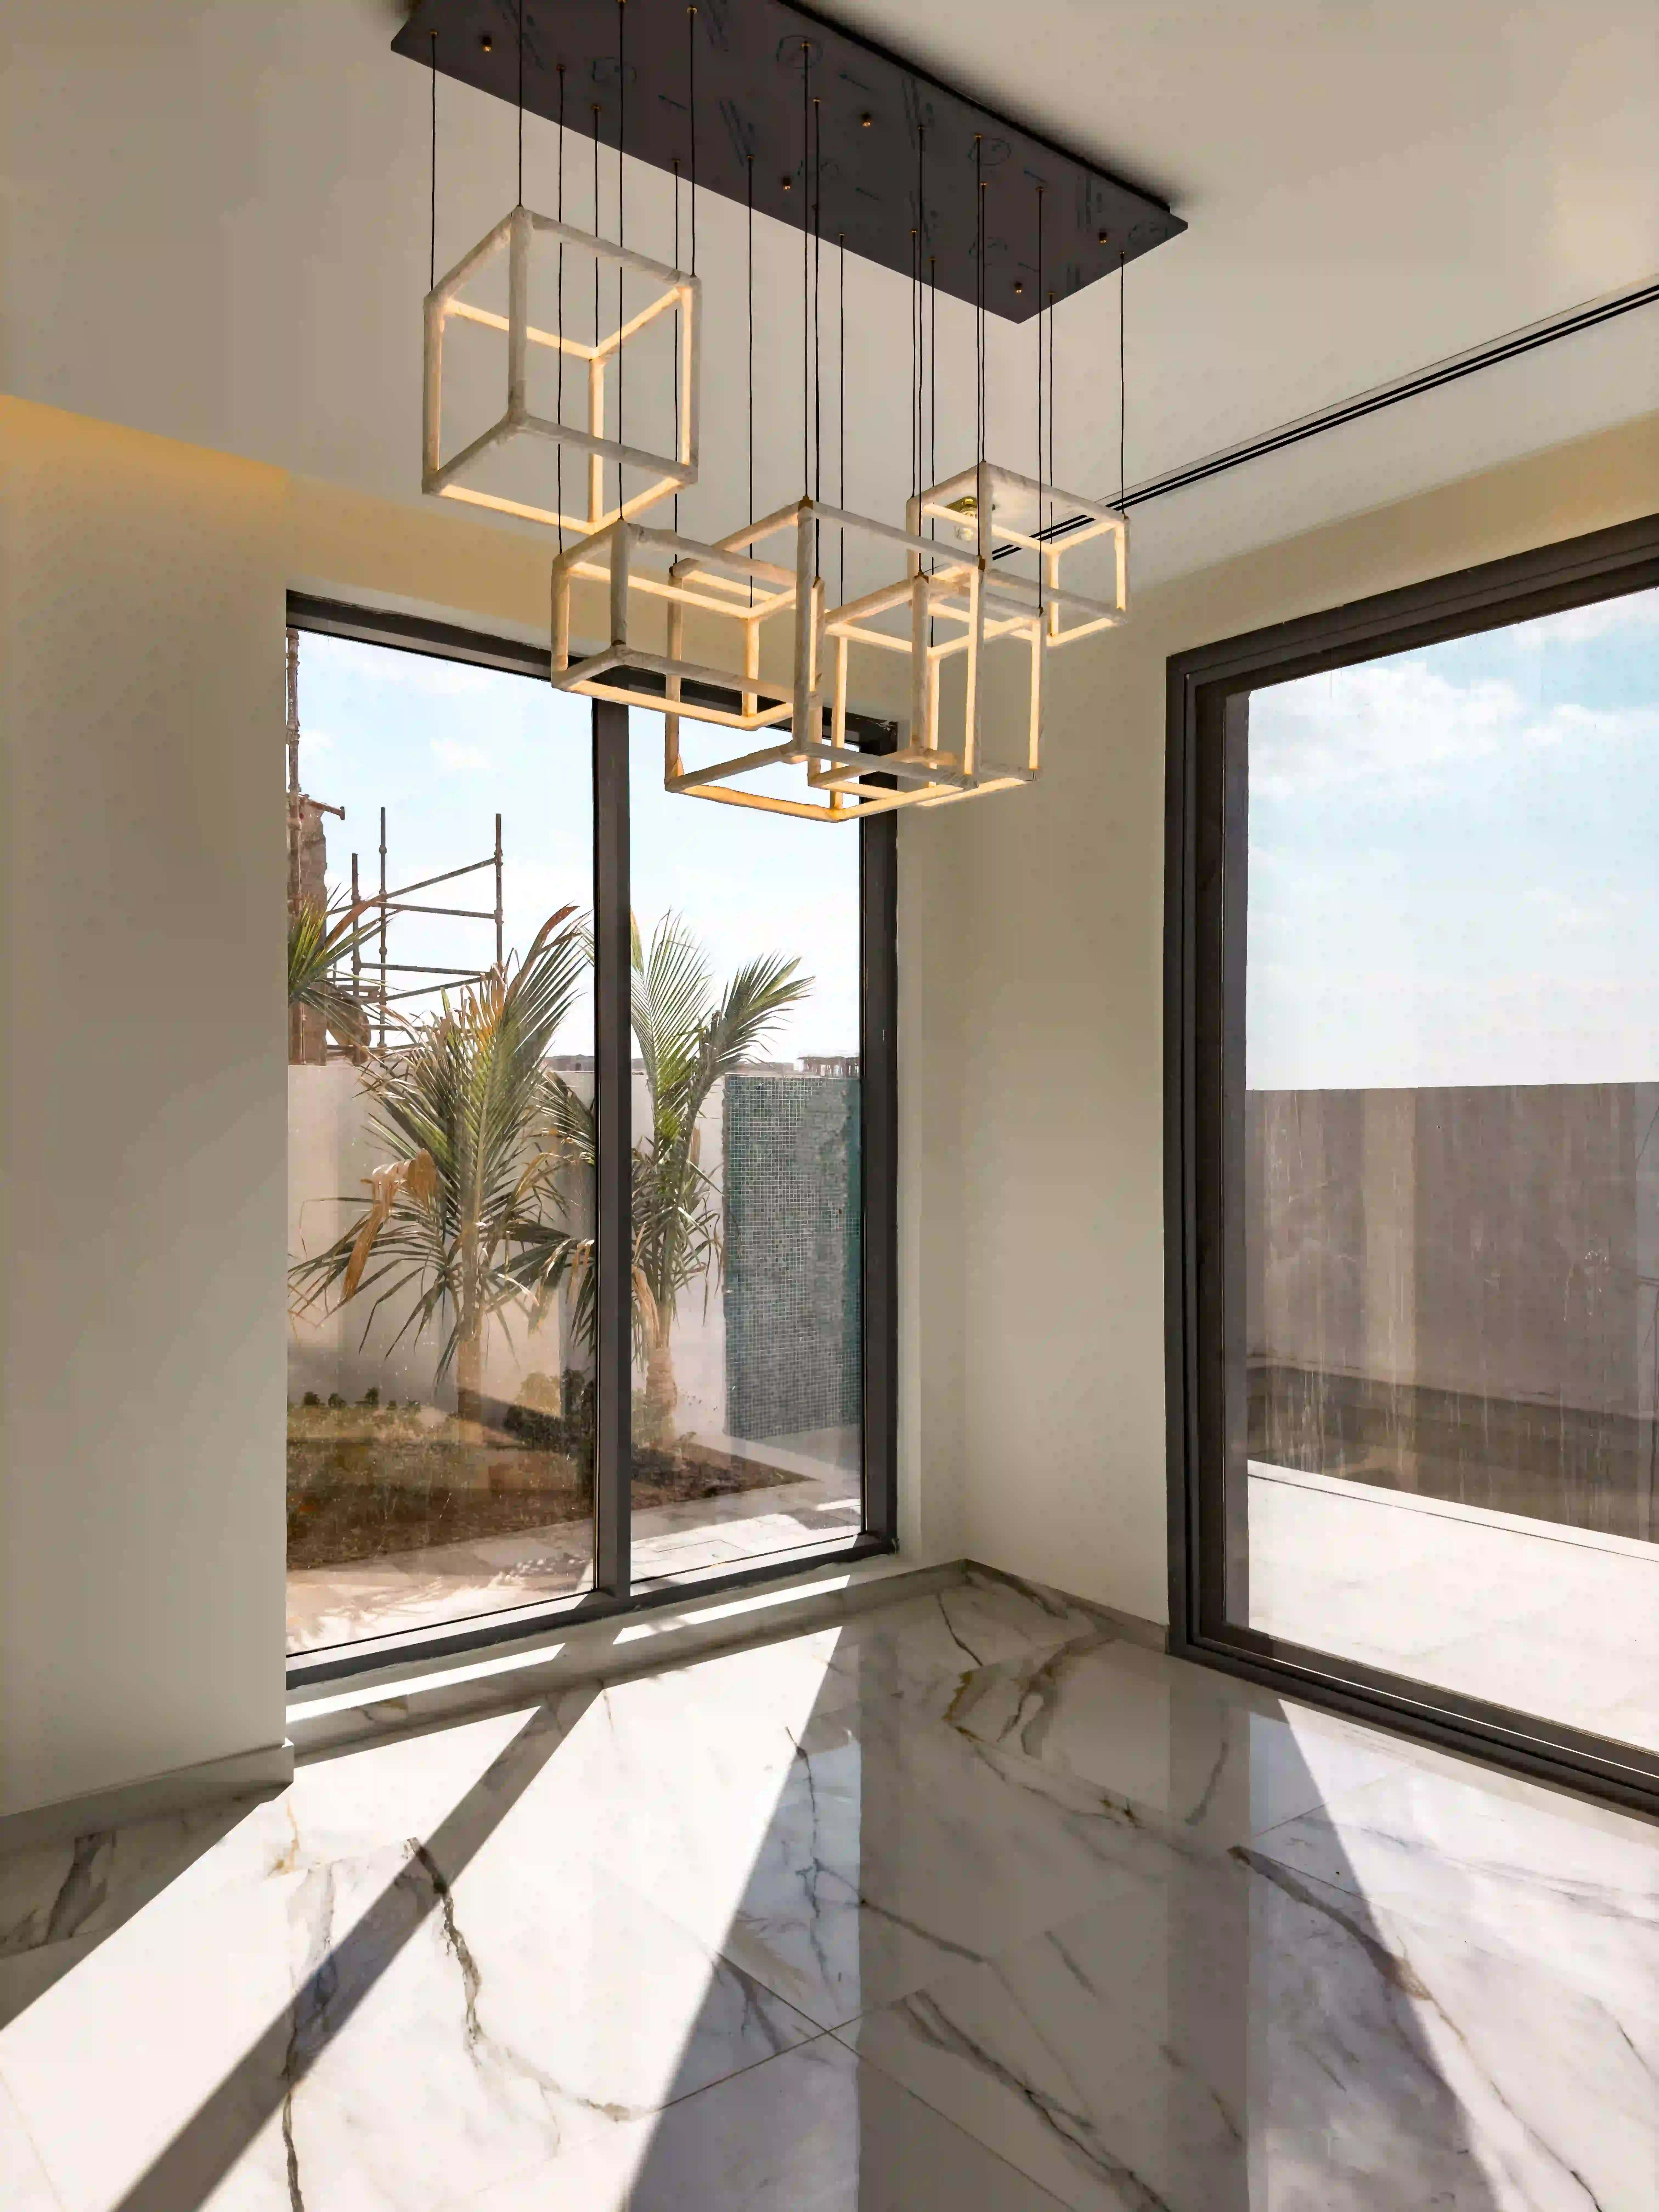 Dubai 6-bedroom luxury villa with stunning living room and marble floors